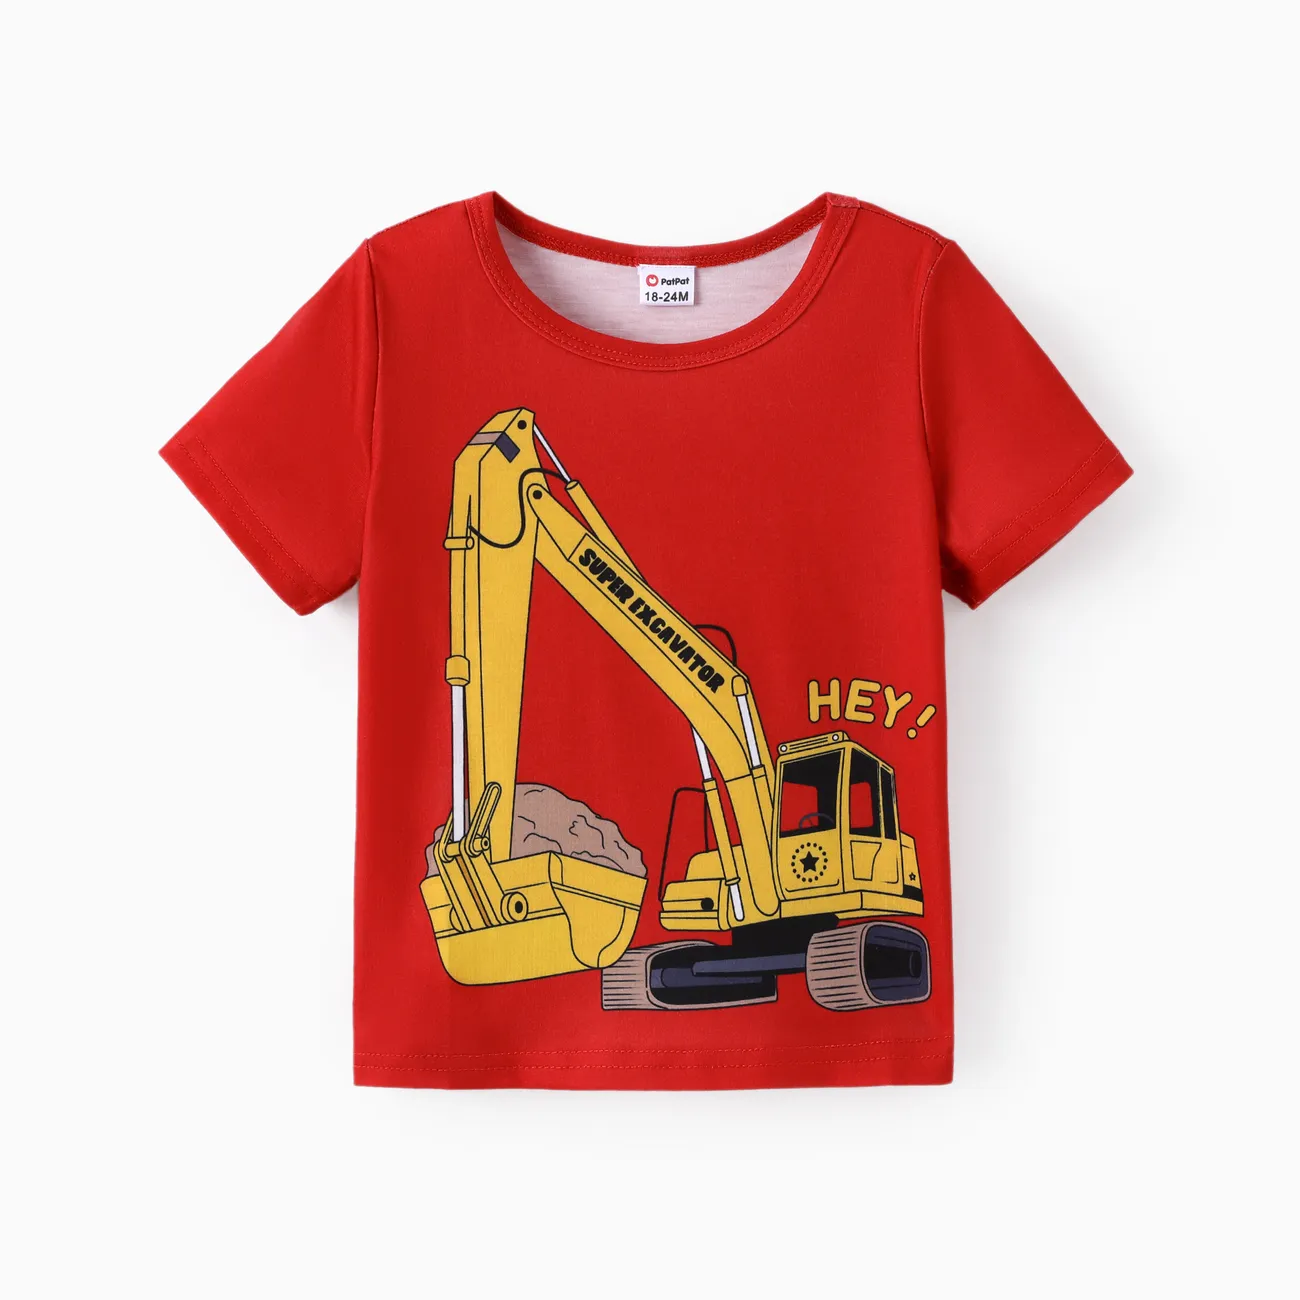 小童 男 童趣 短袖 T恤 紅色 big image 1